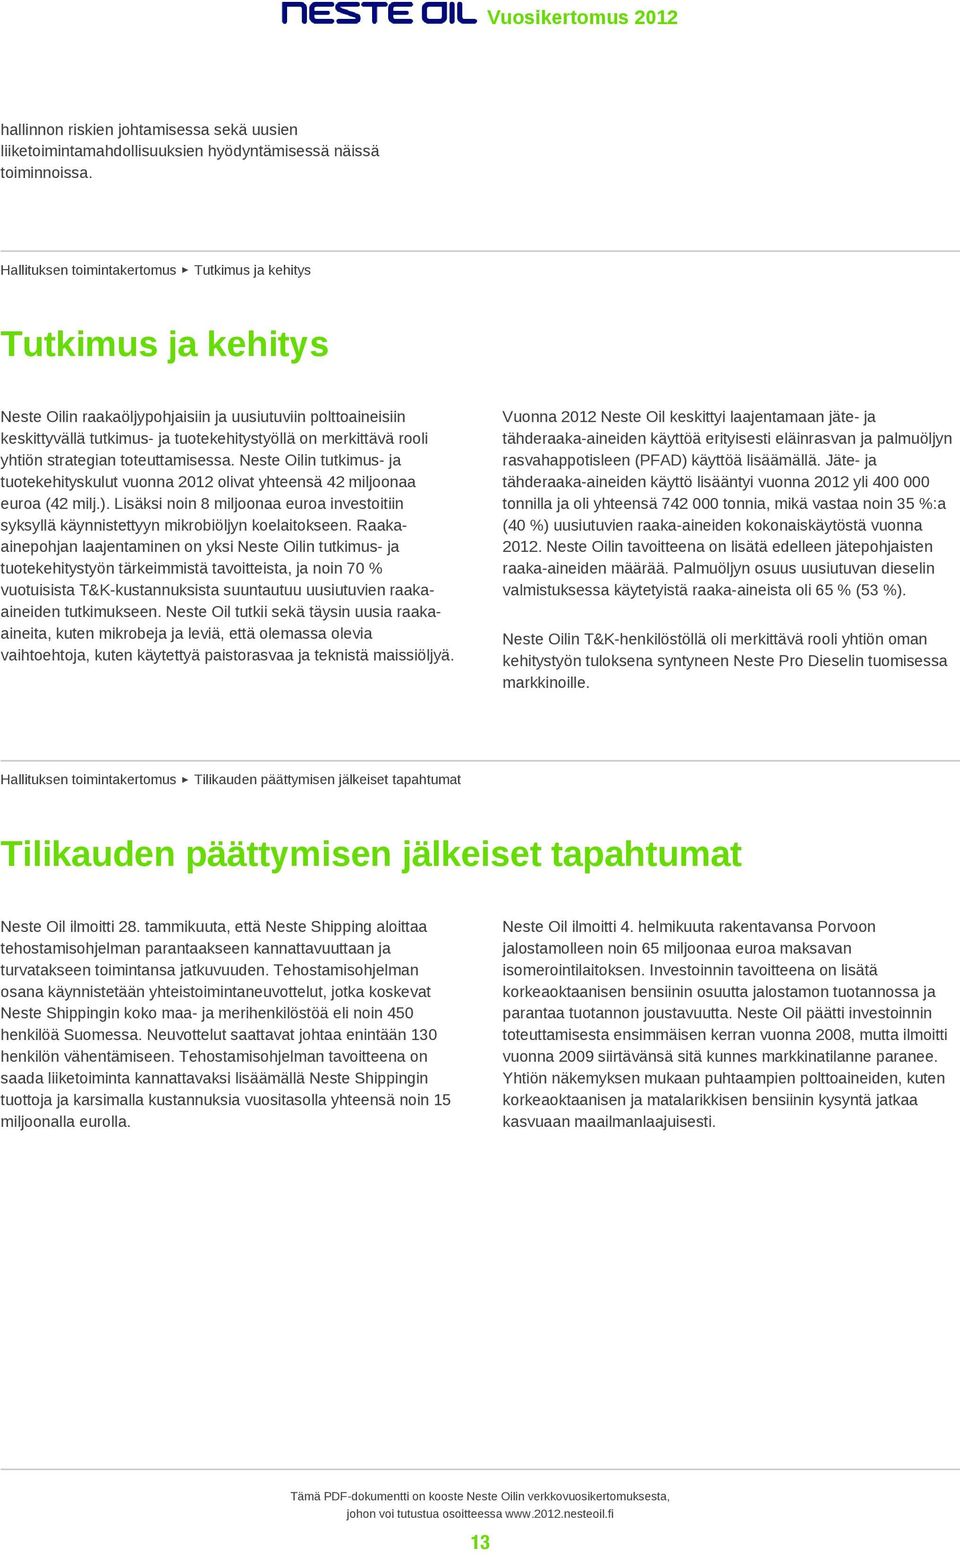 yhtiön strategian toteuttamisessa. Neste Oilin tutkimus- ja tuotekehityskulut vuonna 2012 olivat yhteensä 42 miljoonaa euroa (42 milj.).